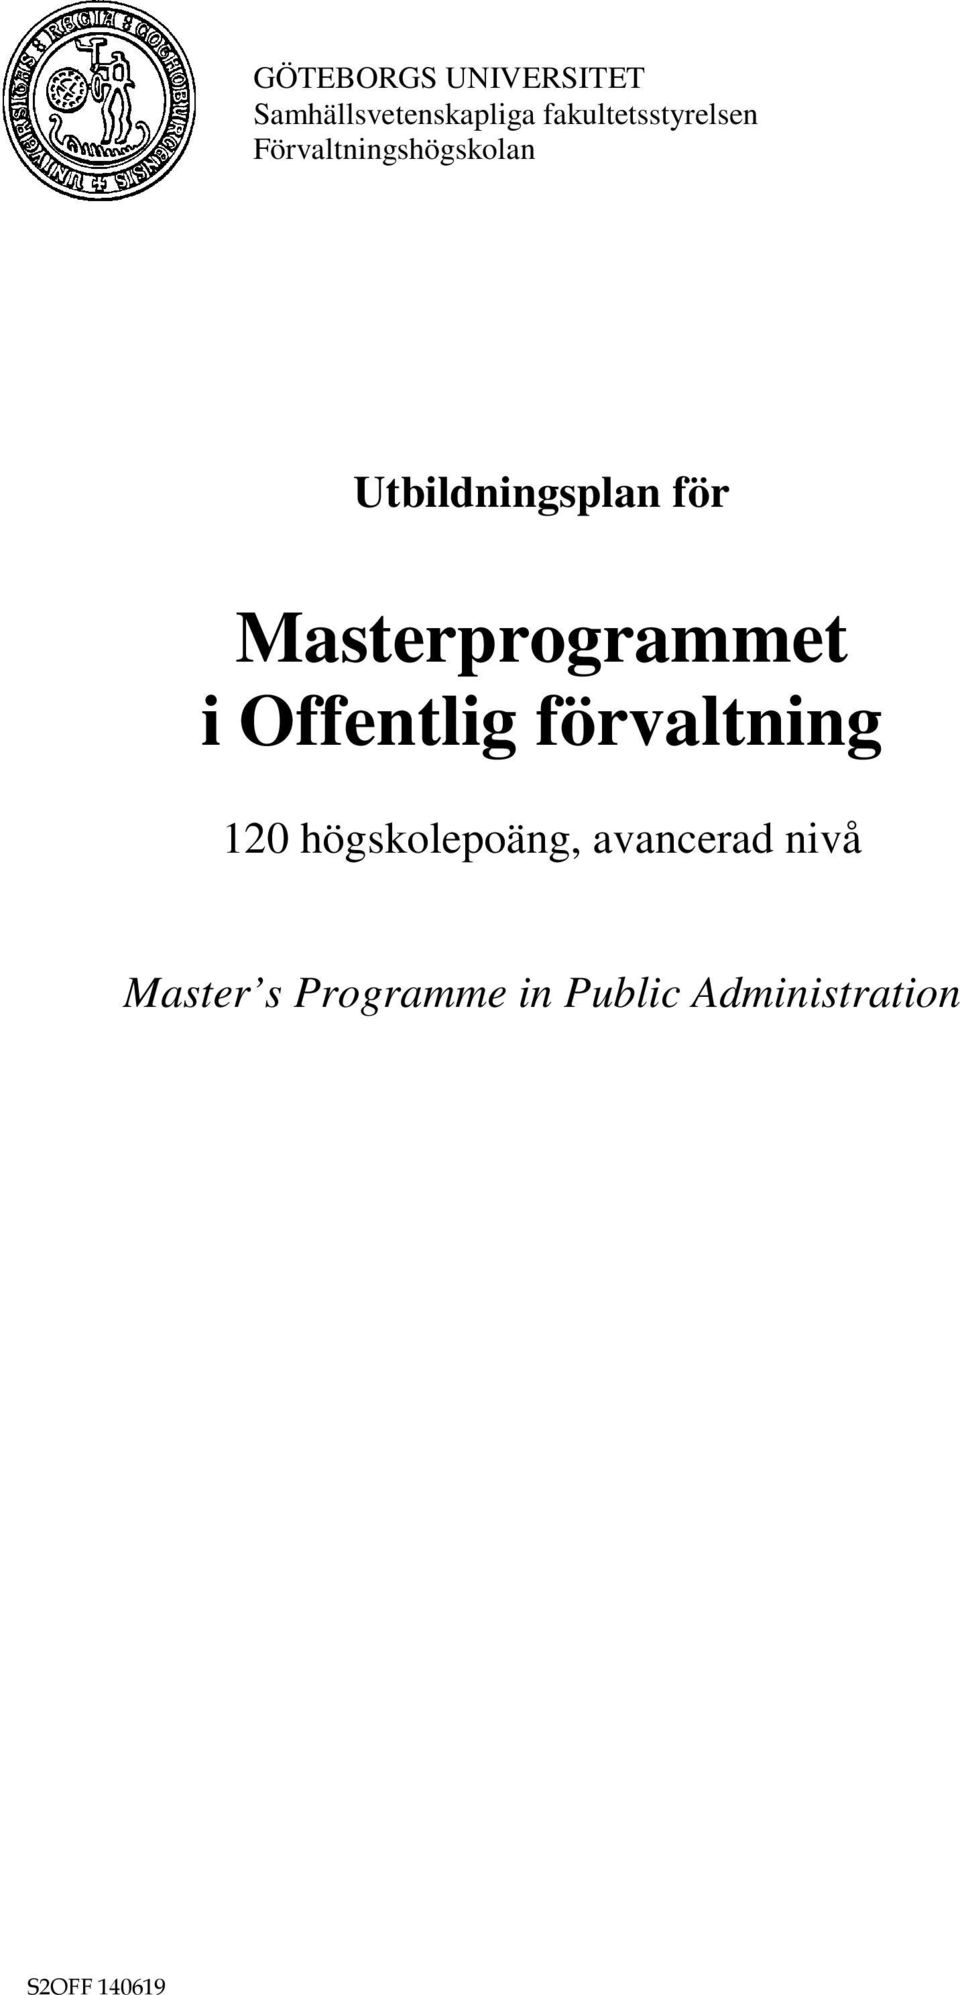 Utbildningsplan för Masterprogrammet i Offentlig